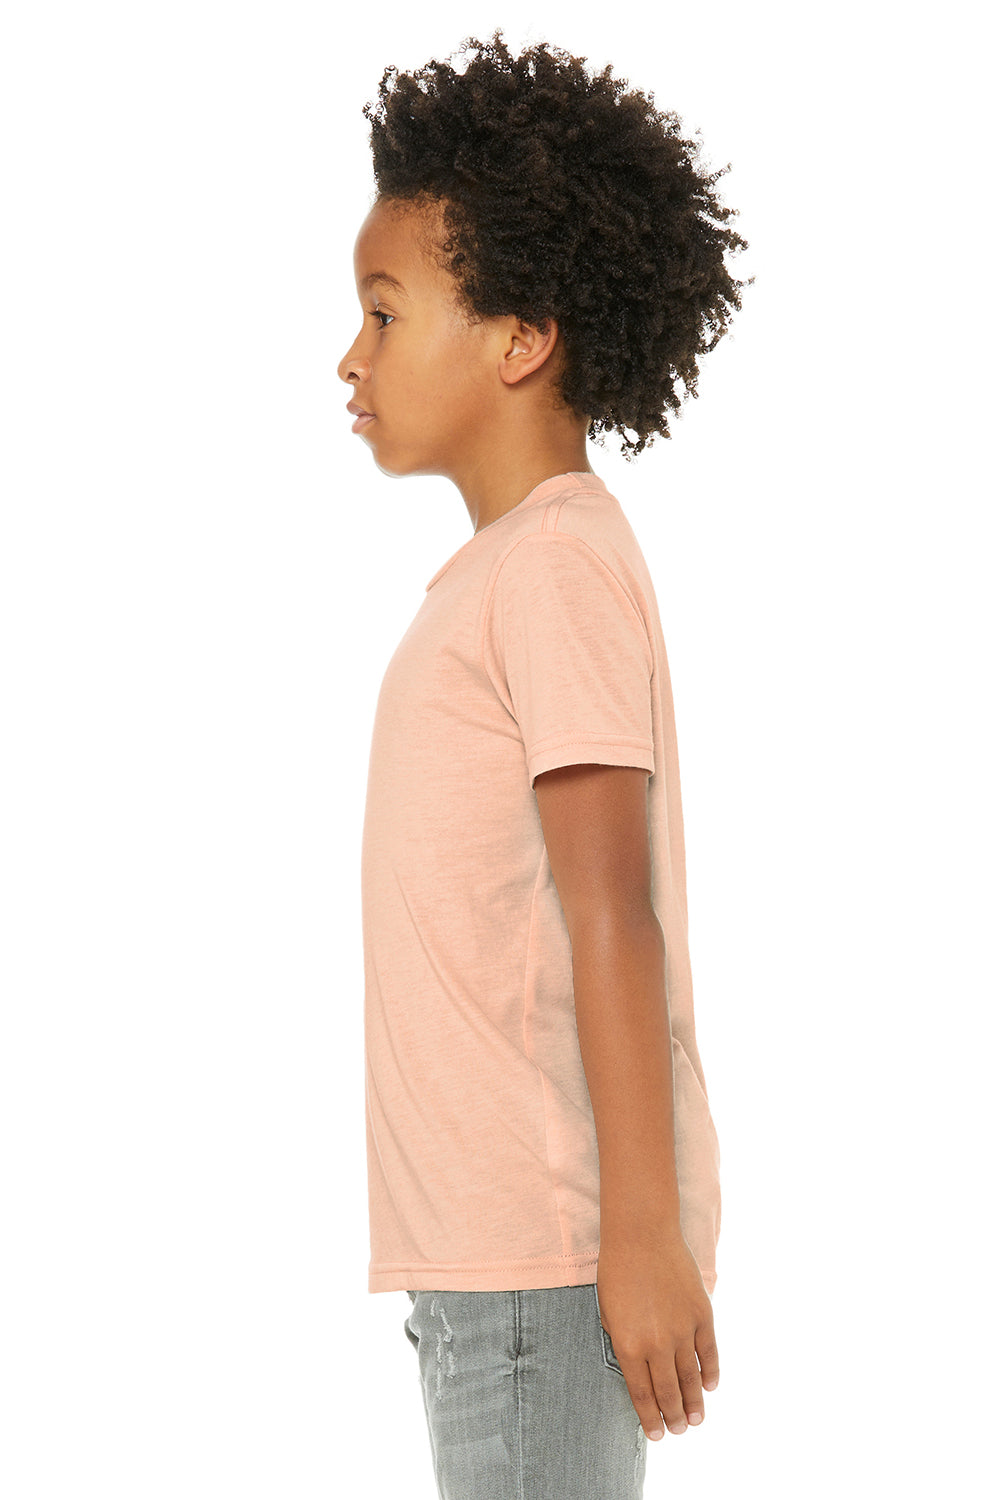 Bella + Canvas 3413Y Youth Short Sleeve Crewneck T-Shirt Peach Model Side